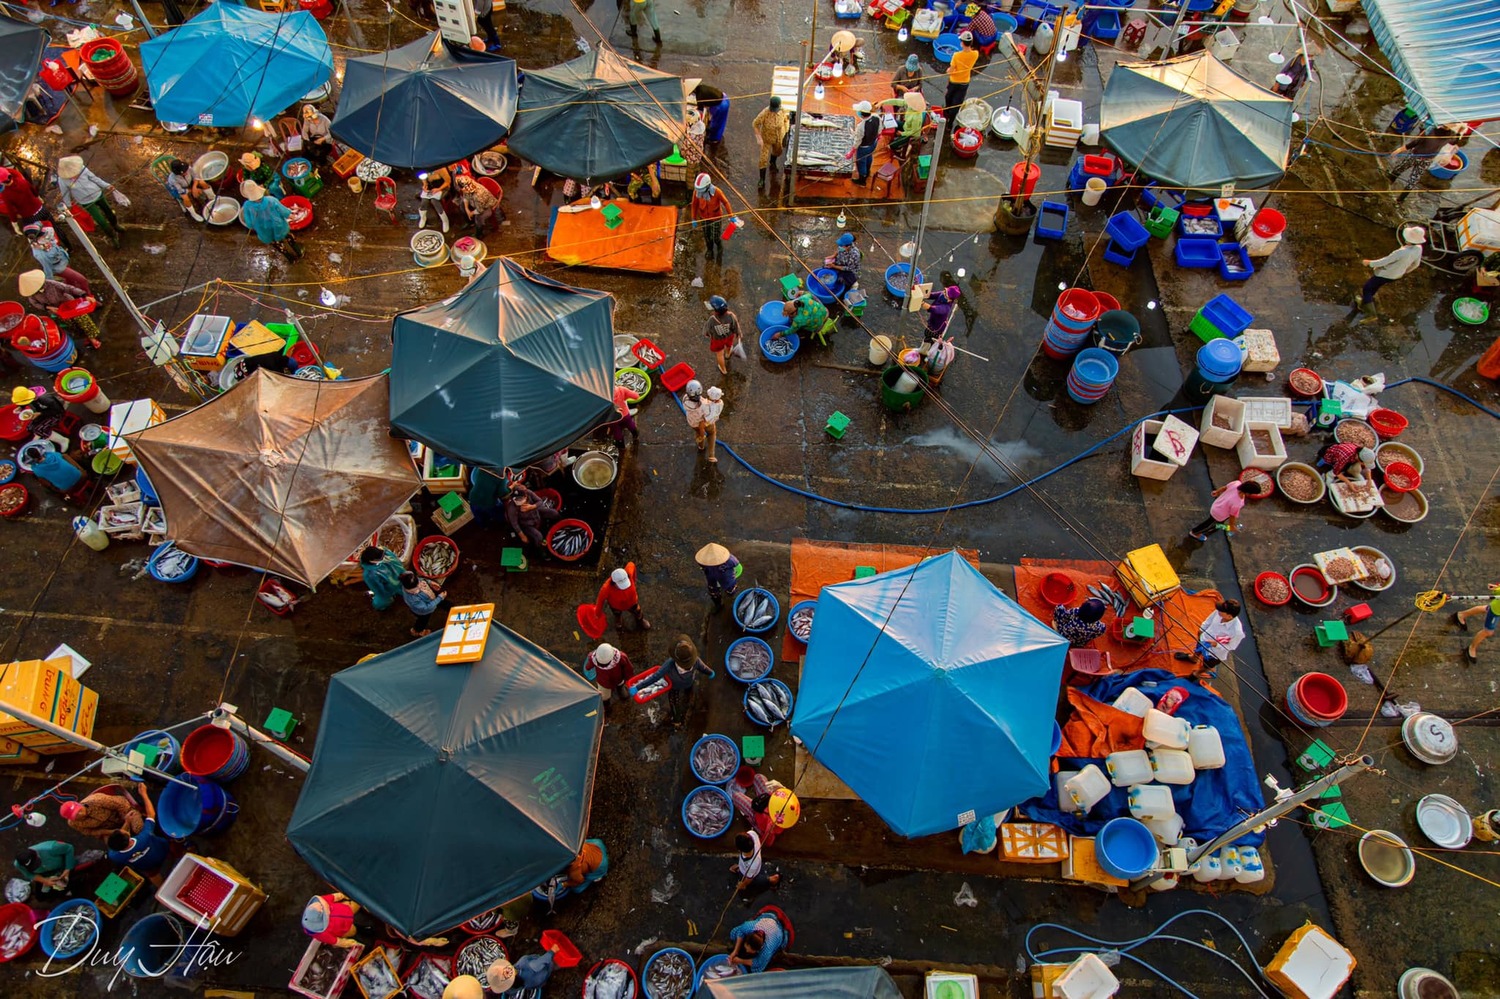 Chợ cá Thanh Hà Hội An – Chợ hải sản tươi sống ngon nhất phố cổ